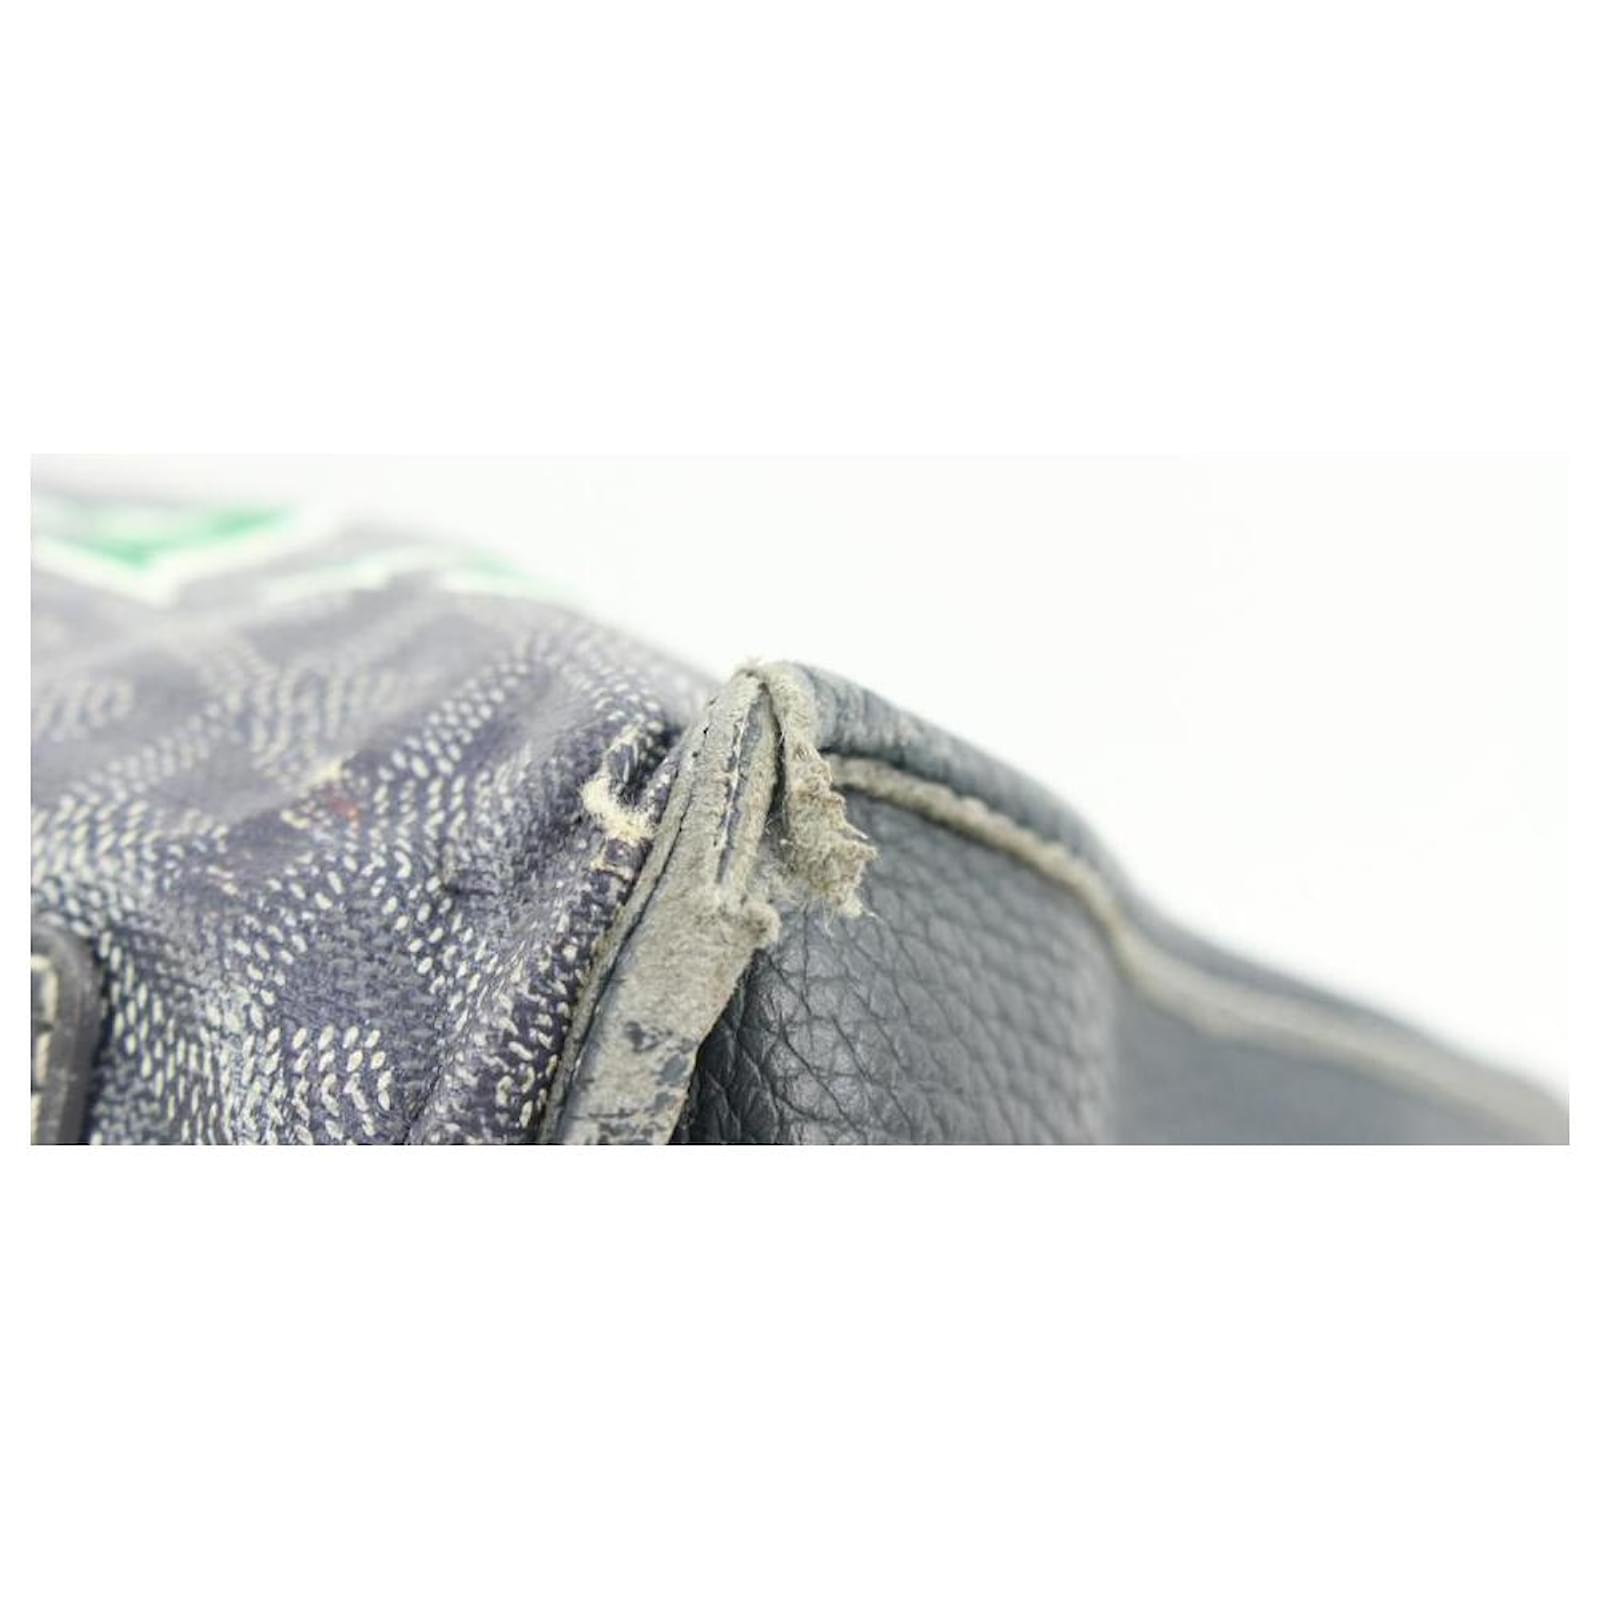 Goyard Goyardine Sac Hardy PM w/ Pouch - Grey Totes, Handbags